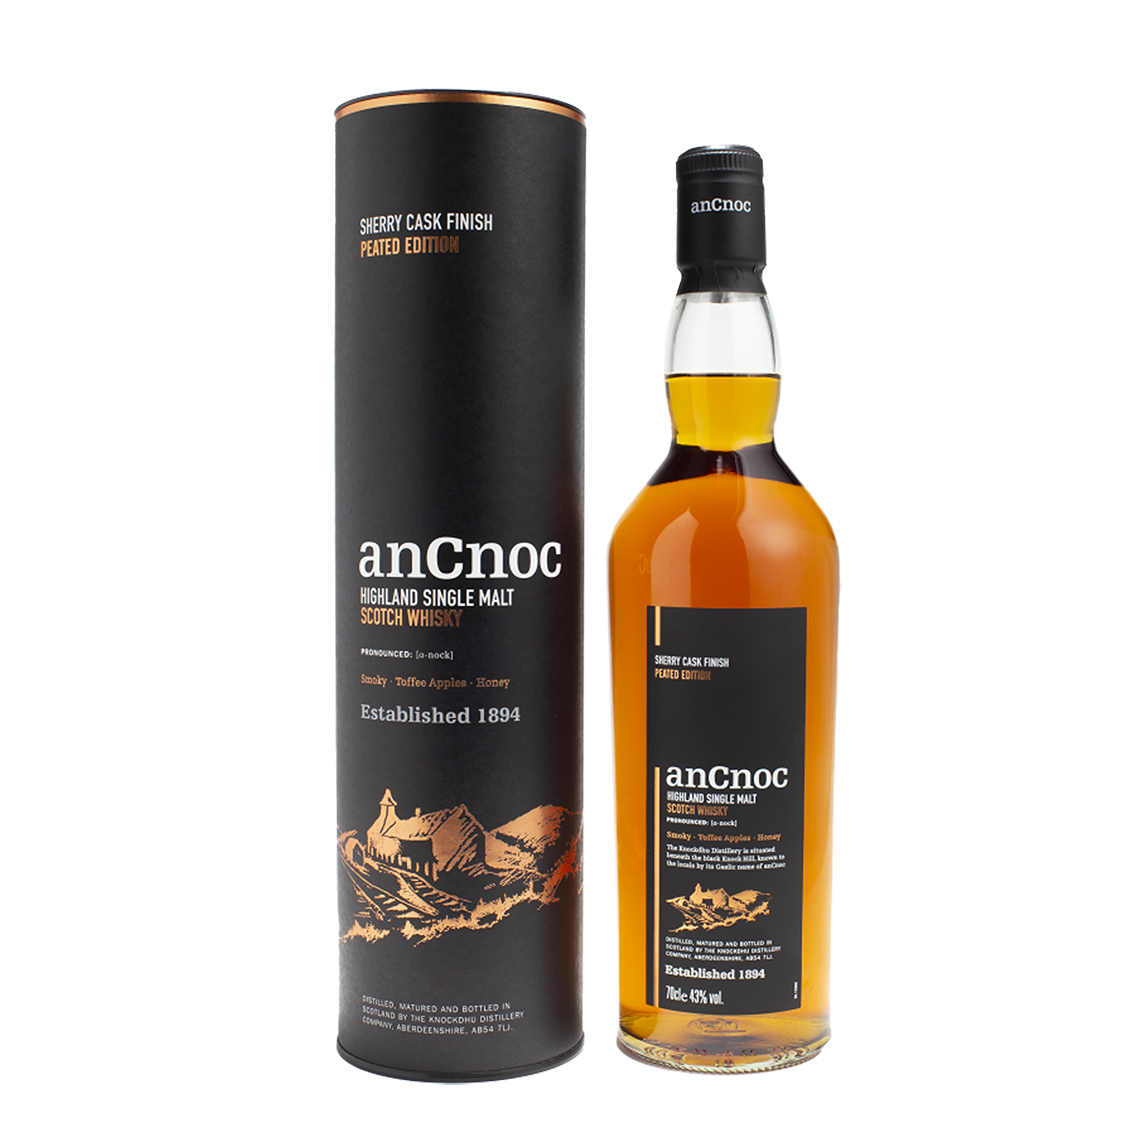 anCnoc, Sherry Cask Finish, Peated Single Malt Whisky